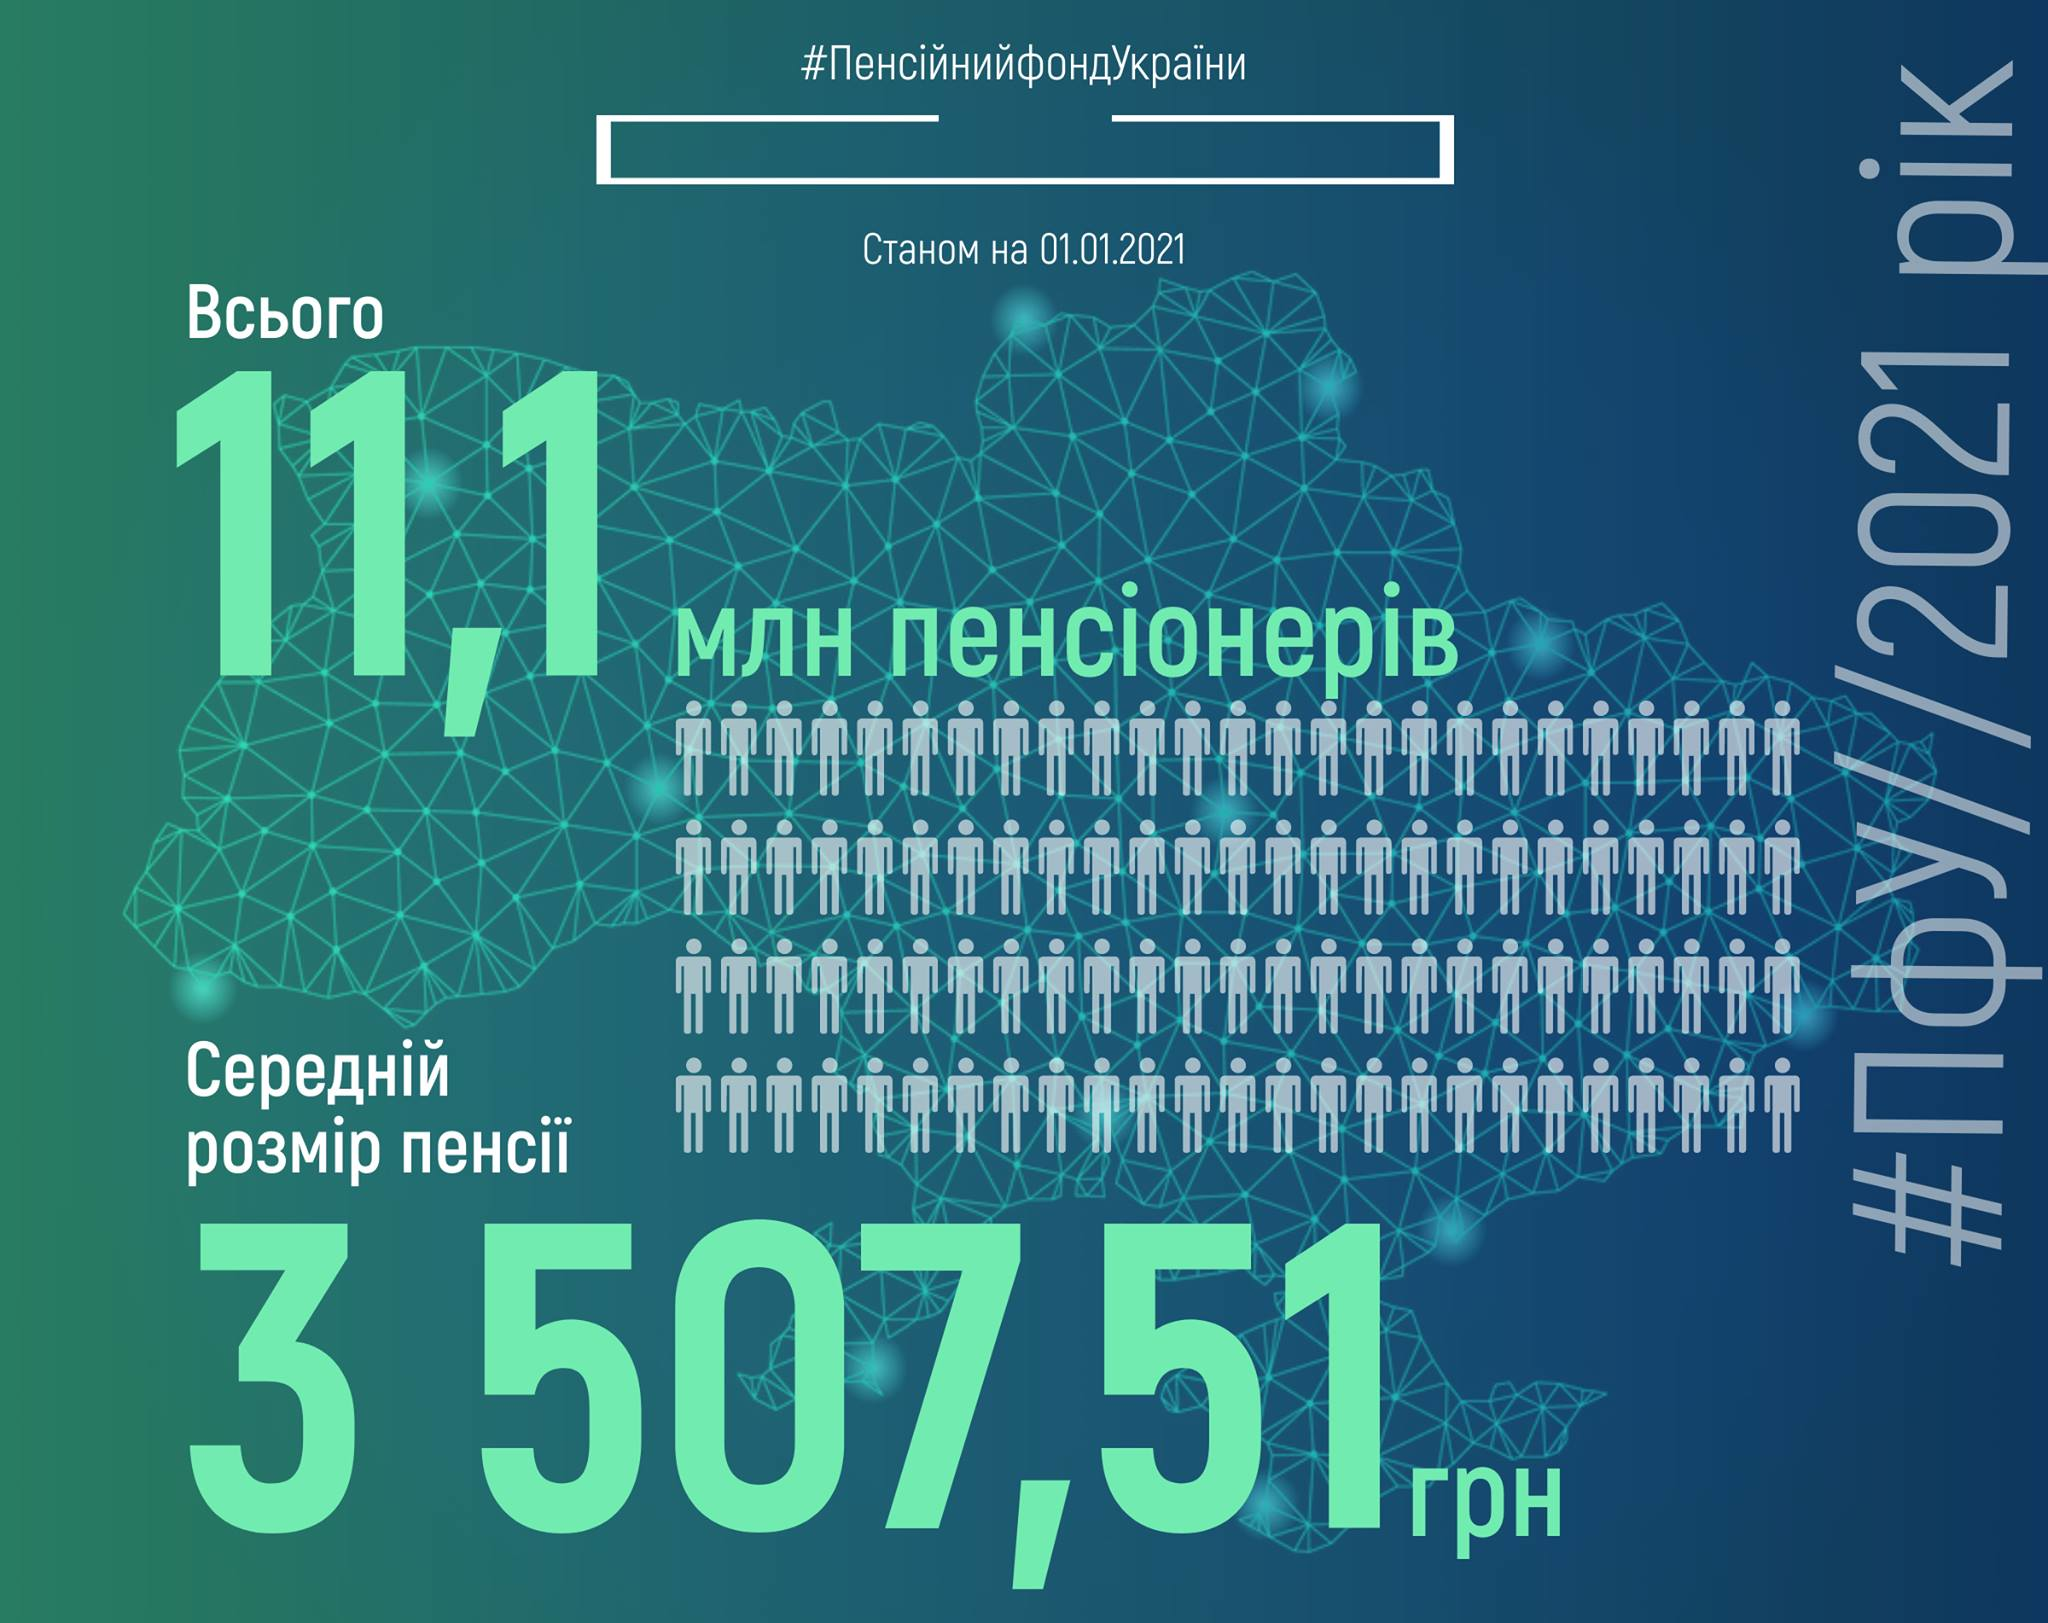 Средний размер пенсии в Украине